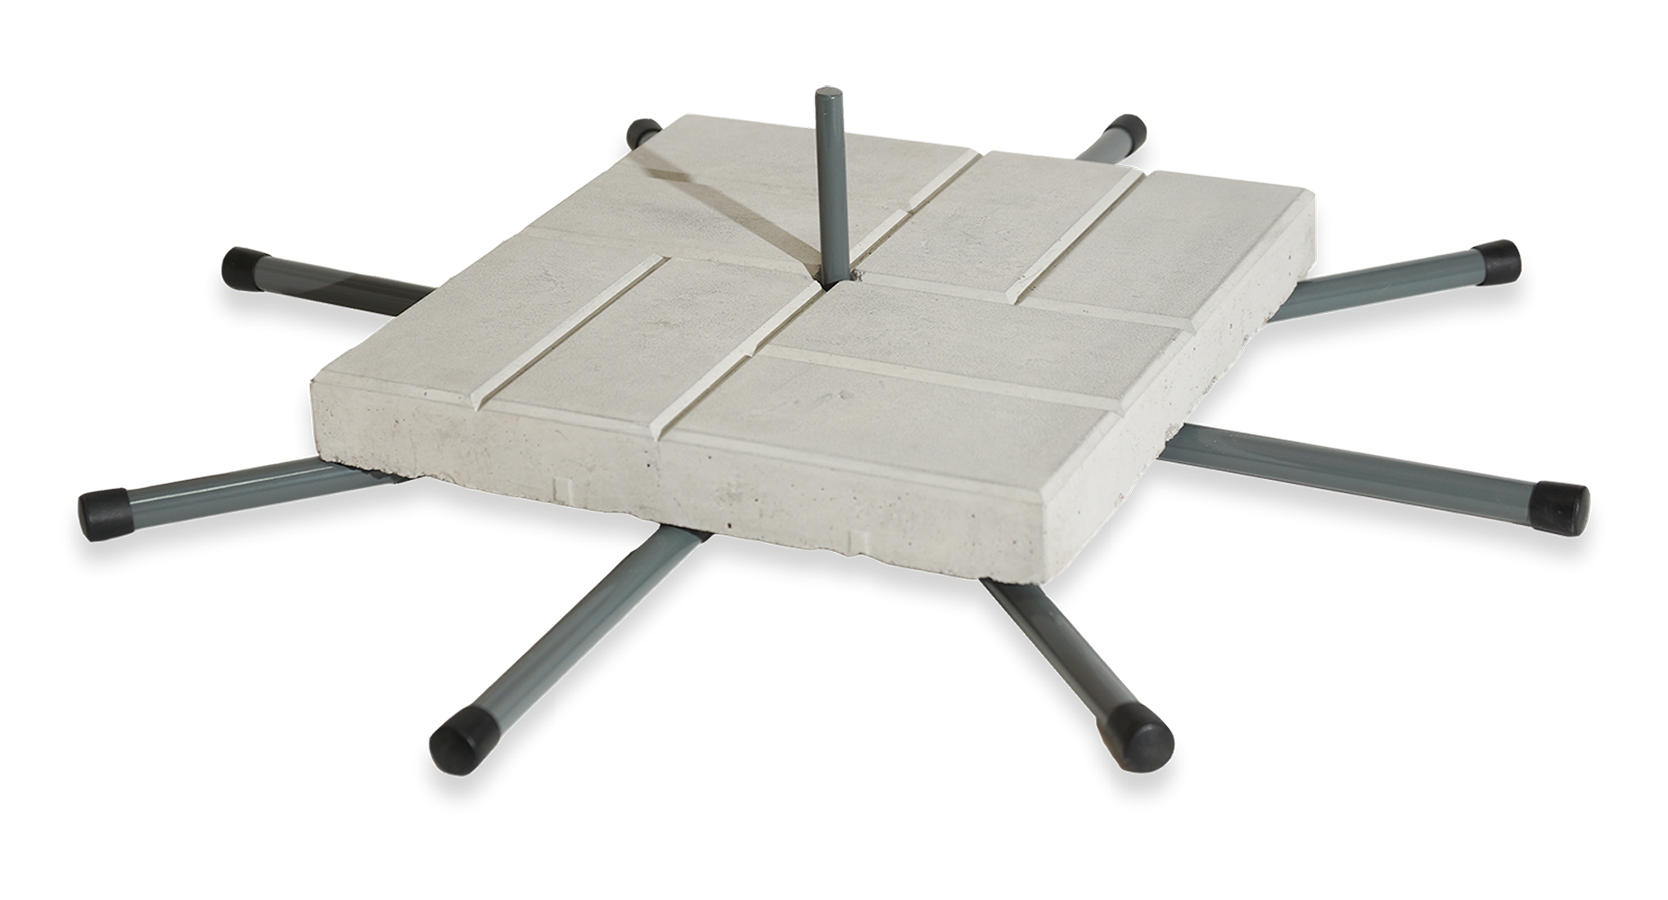 Мобильная Опора Паук - с шестью ногами, дополненная одной бетонной плиткой 40х40х5 см. 